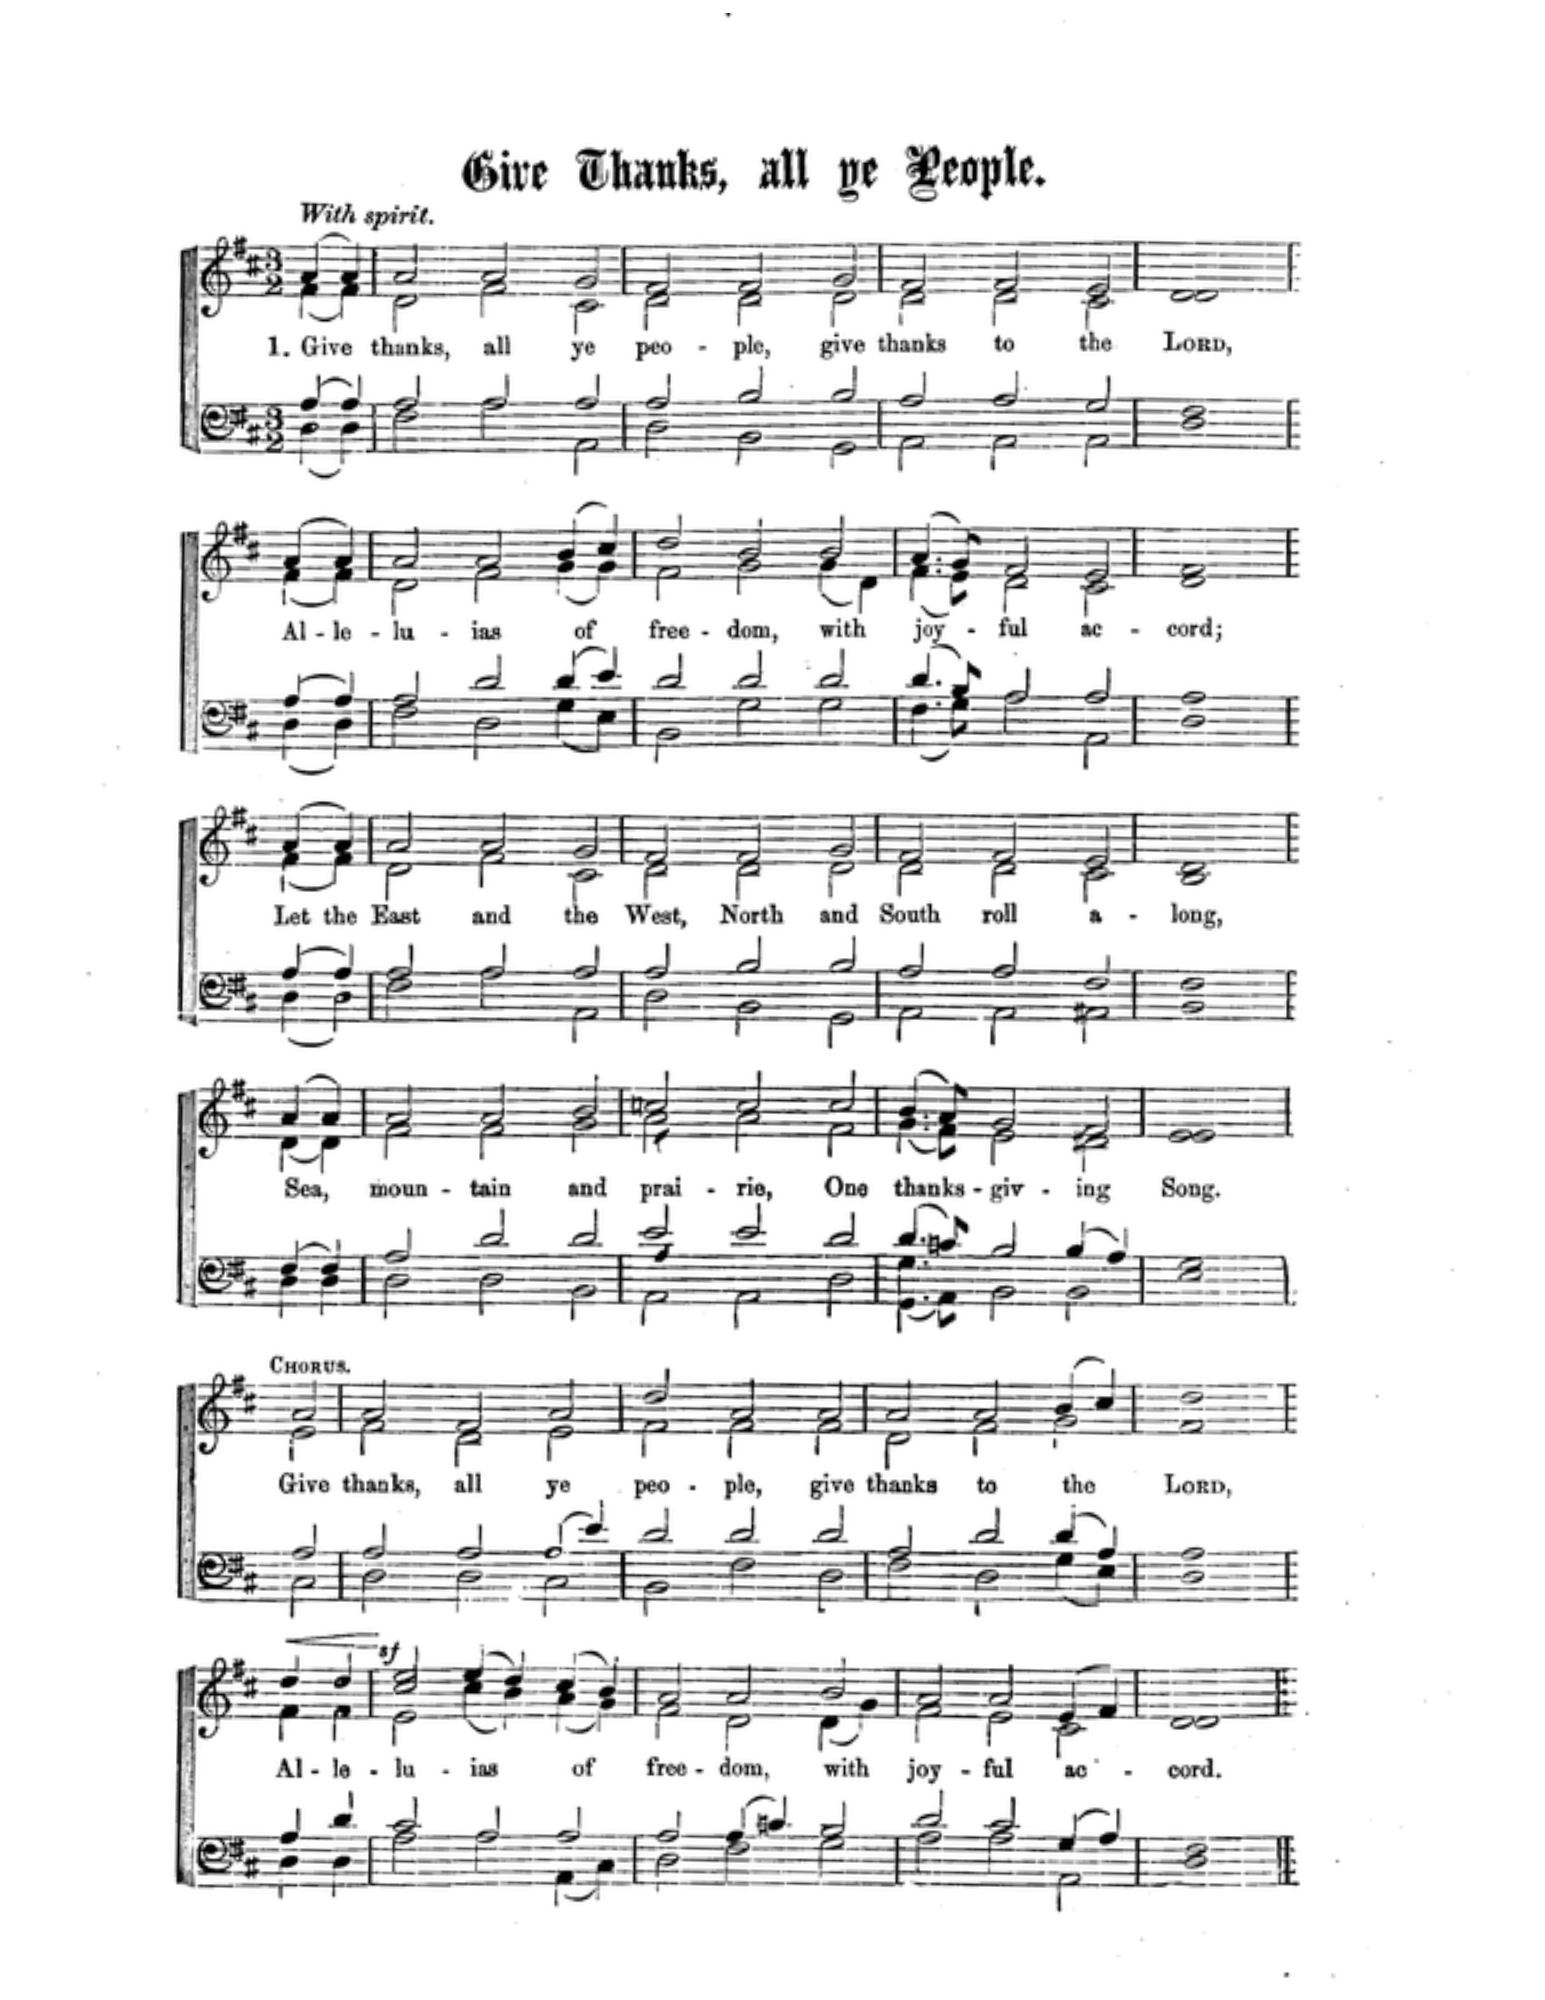 The President's Hymn Thanksgiving Sheet Music